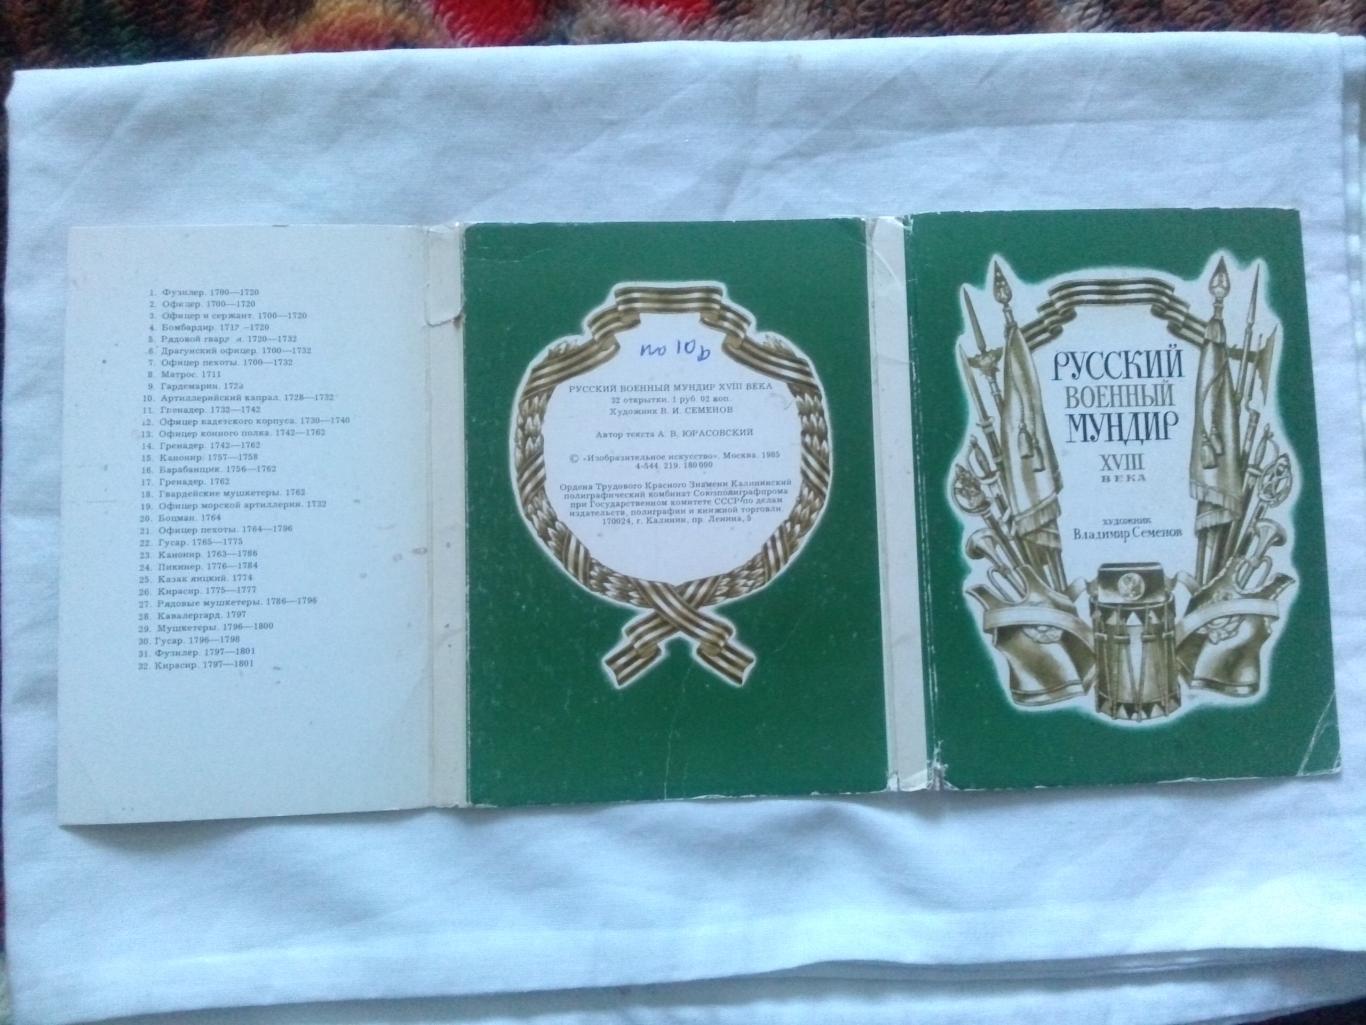 Русский военный мундир XVIII века (1985 г.) полный набор - 32 открытки (чистые) 1